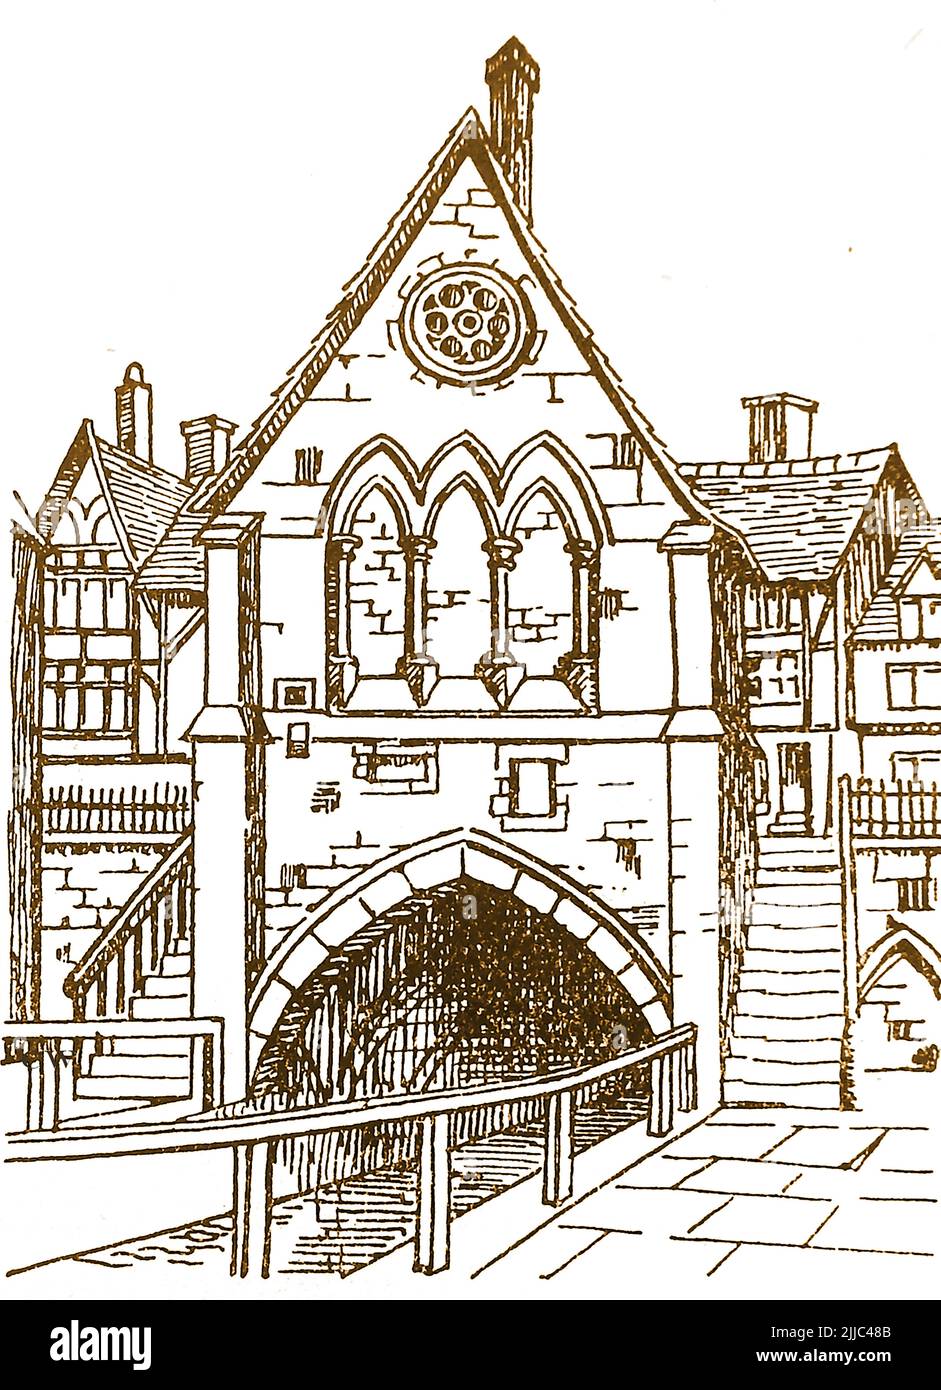 Geschichte von Lincoln, England - eine alte Skizze der ehemaligen High Bridge Chapel. Die mittelalterliche Steinbogenbrücke ist eine der ältesten in England. Sie überquert den Fluss Witham und wurde 1160 erbaut, die heutigen Fachwerkbauten in der Brückendecke stammen aus der Zeit um 1550 Stockfoto